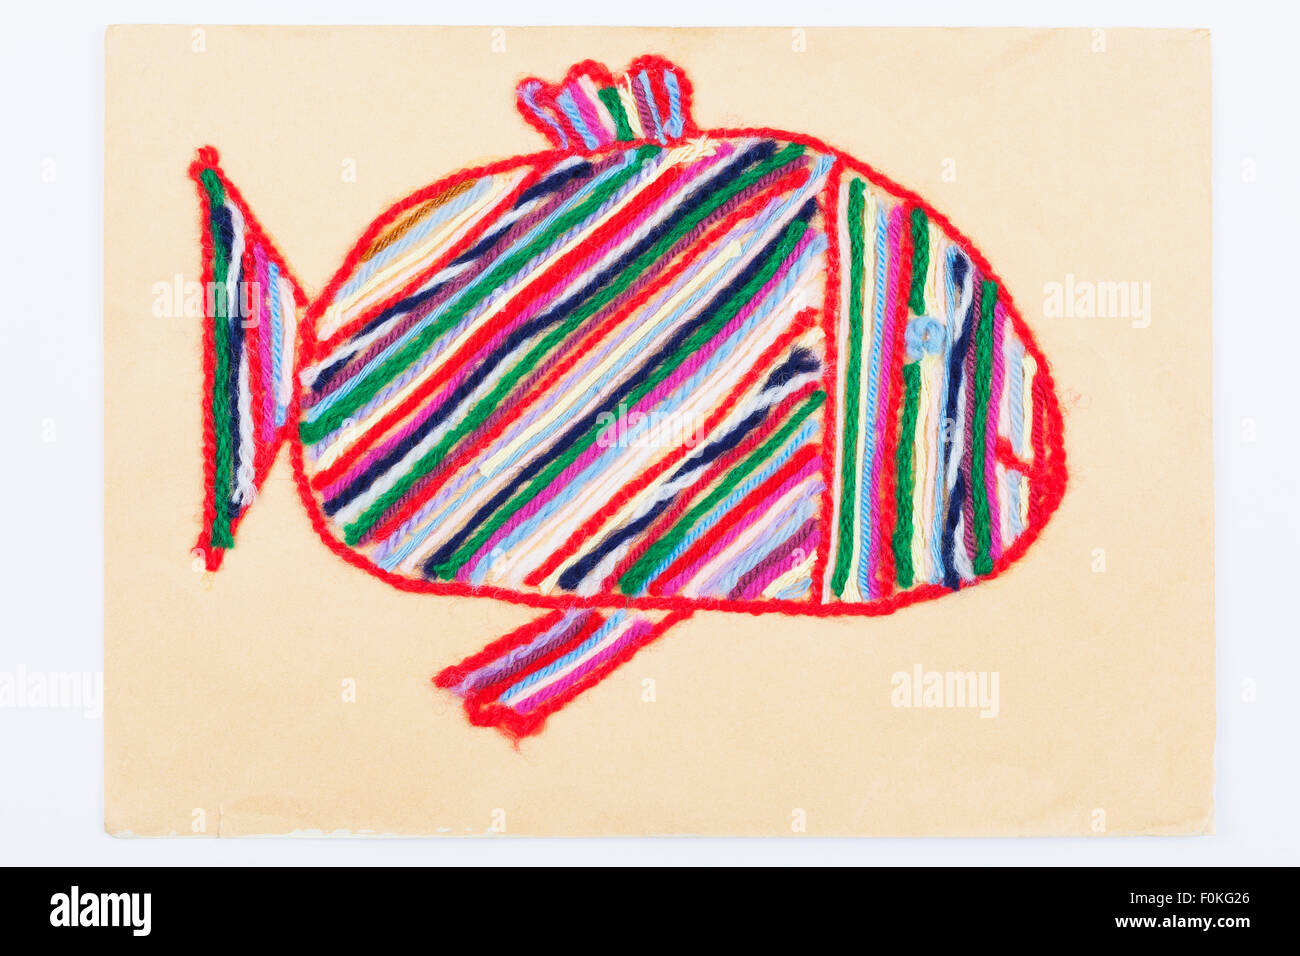 Handarbeit, Stickerei, bestickte Karton mit Wolle, bunte Fische  Stockfotografie - Alamy